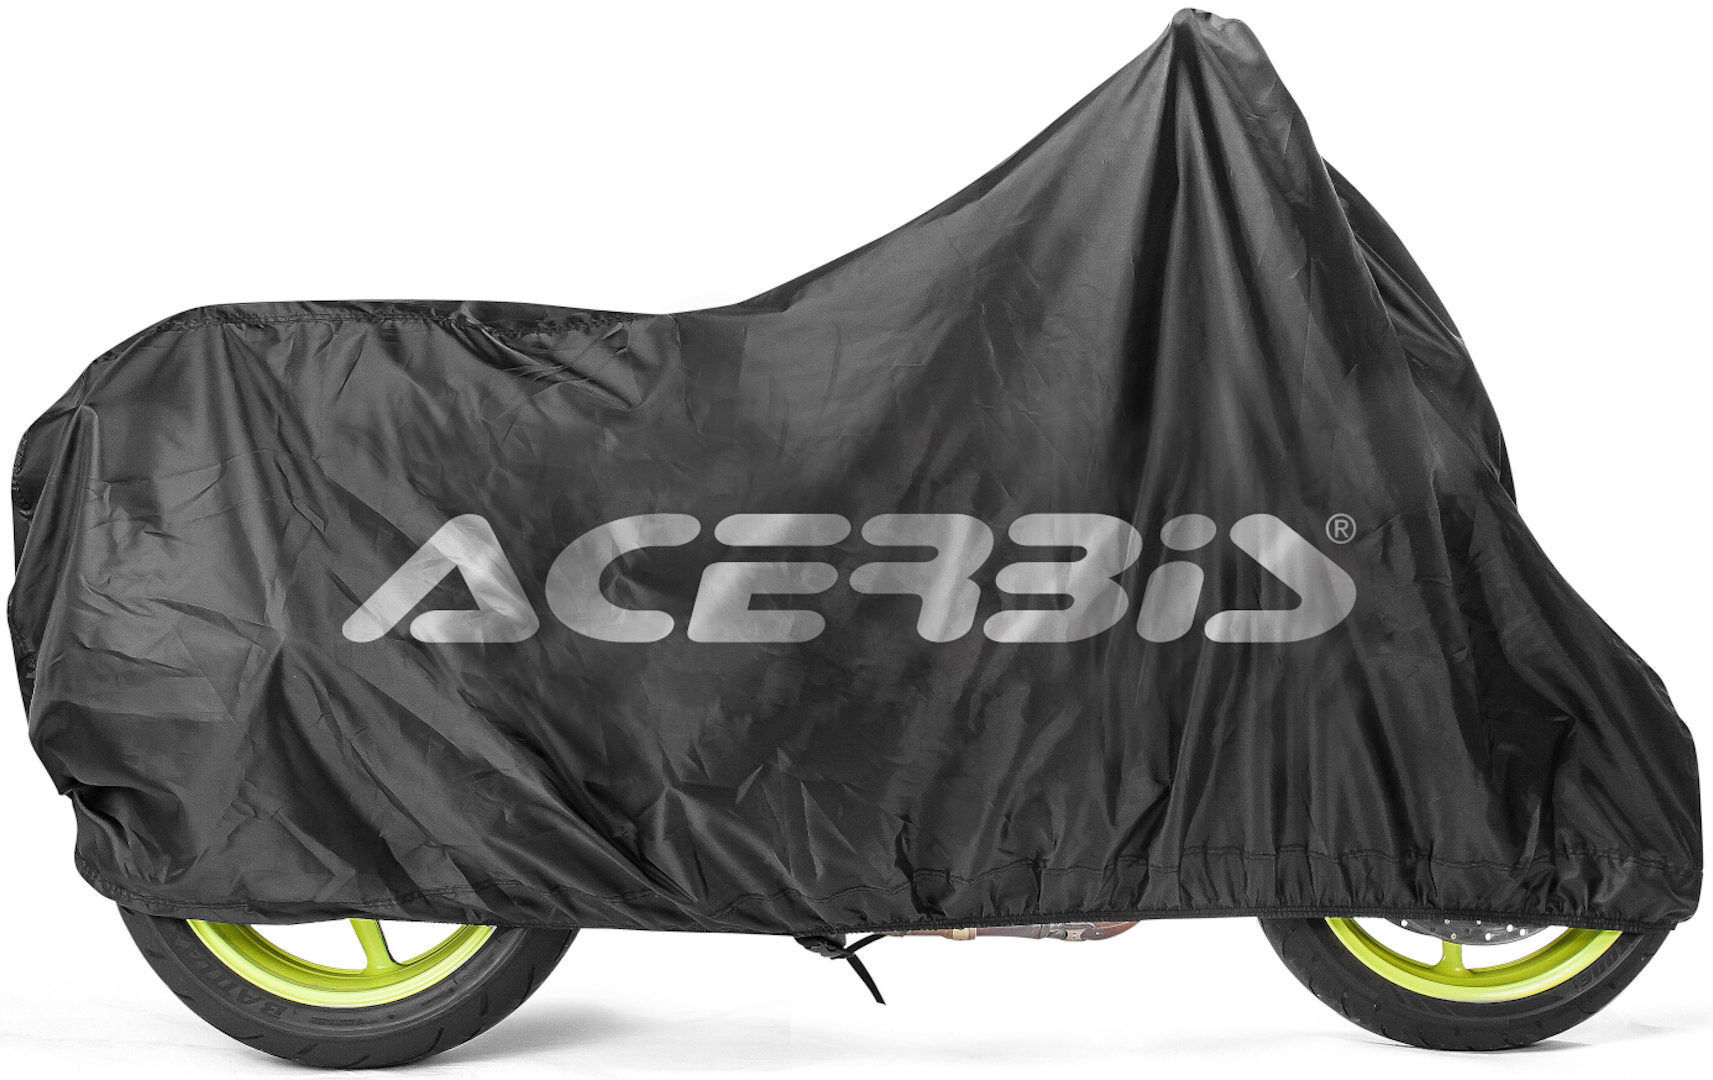 Acerbis Corporate Cubierta de bicicleta - Negro